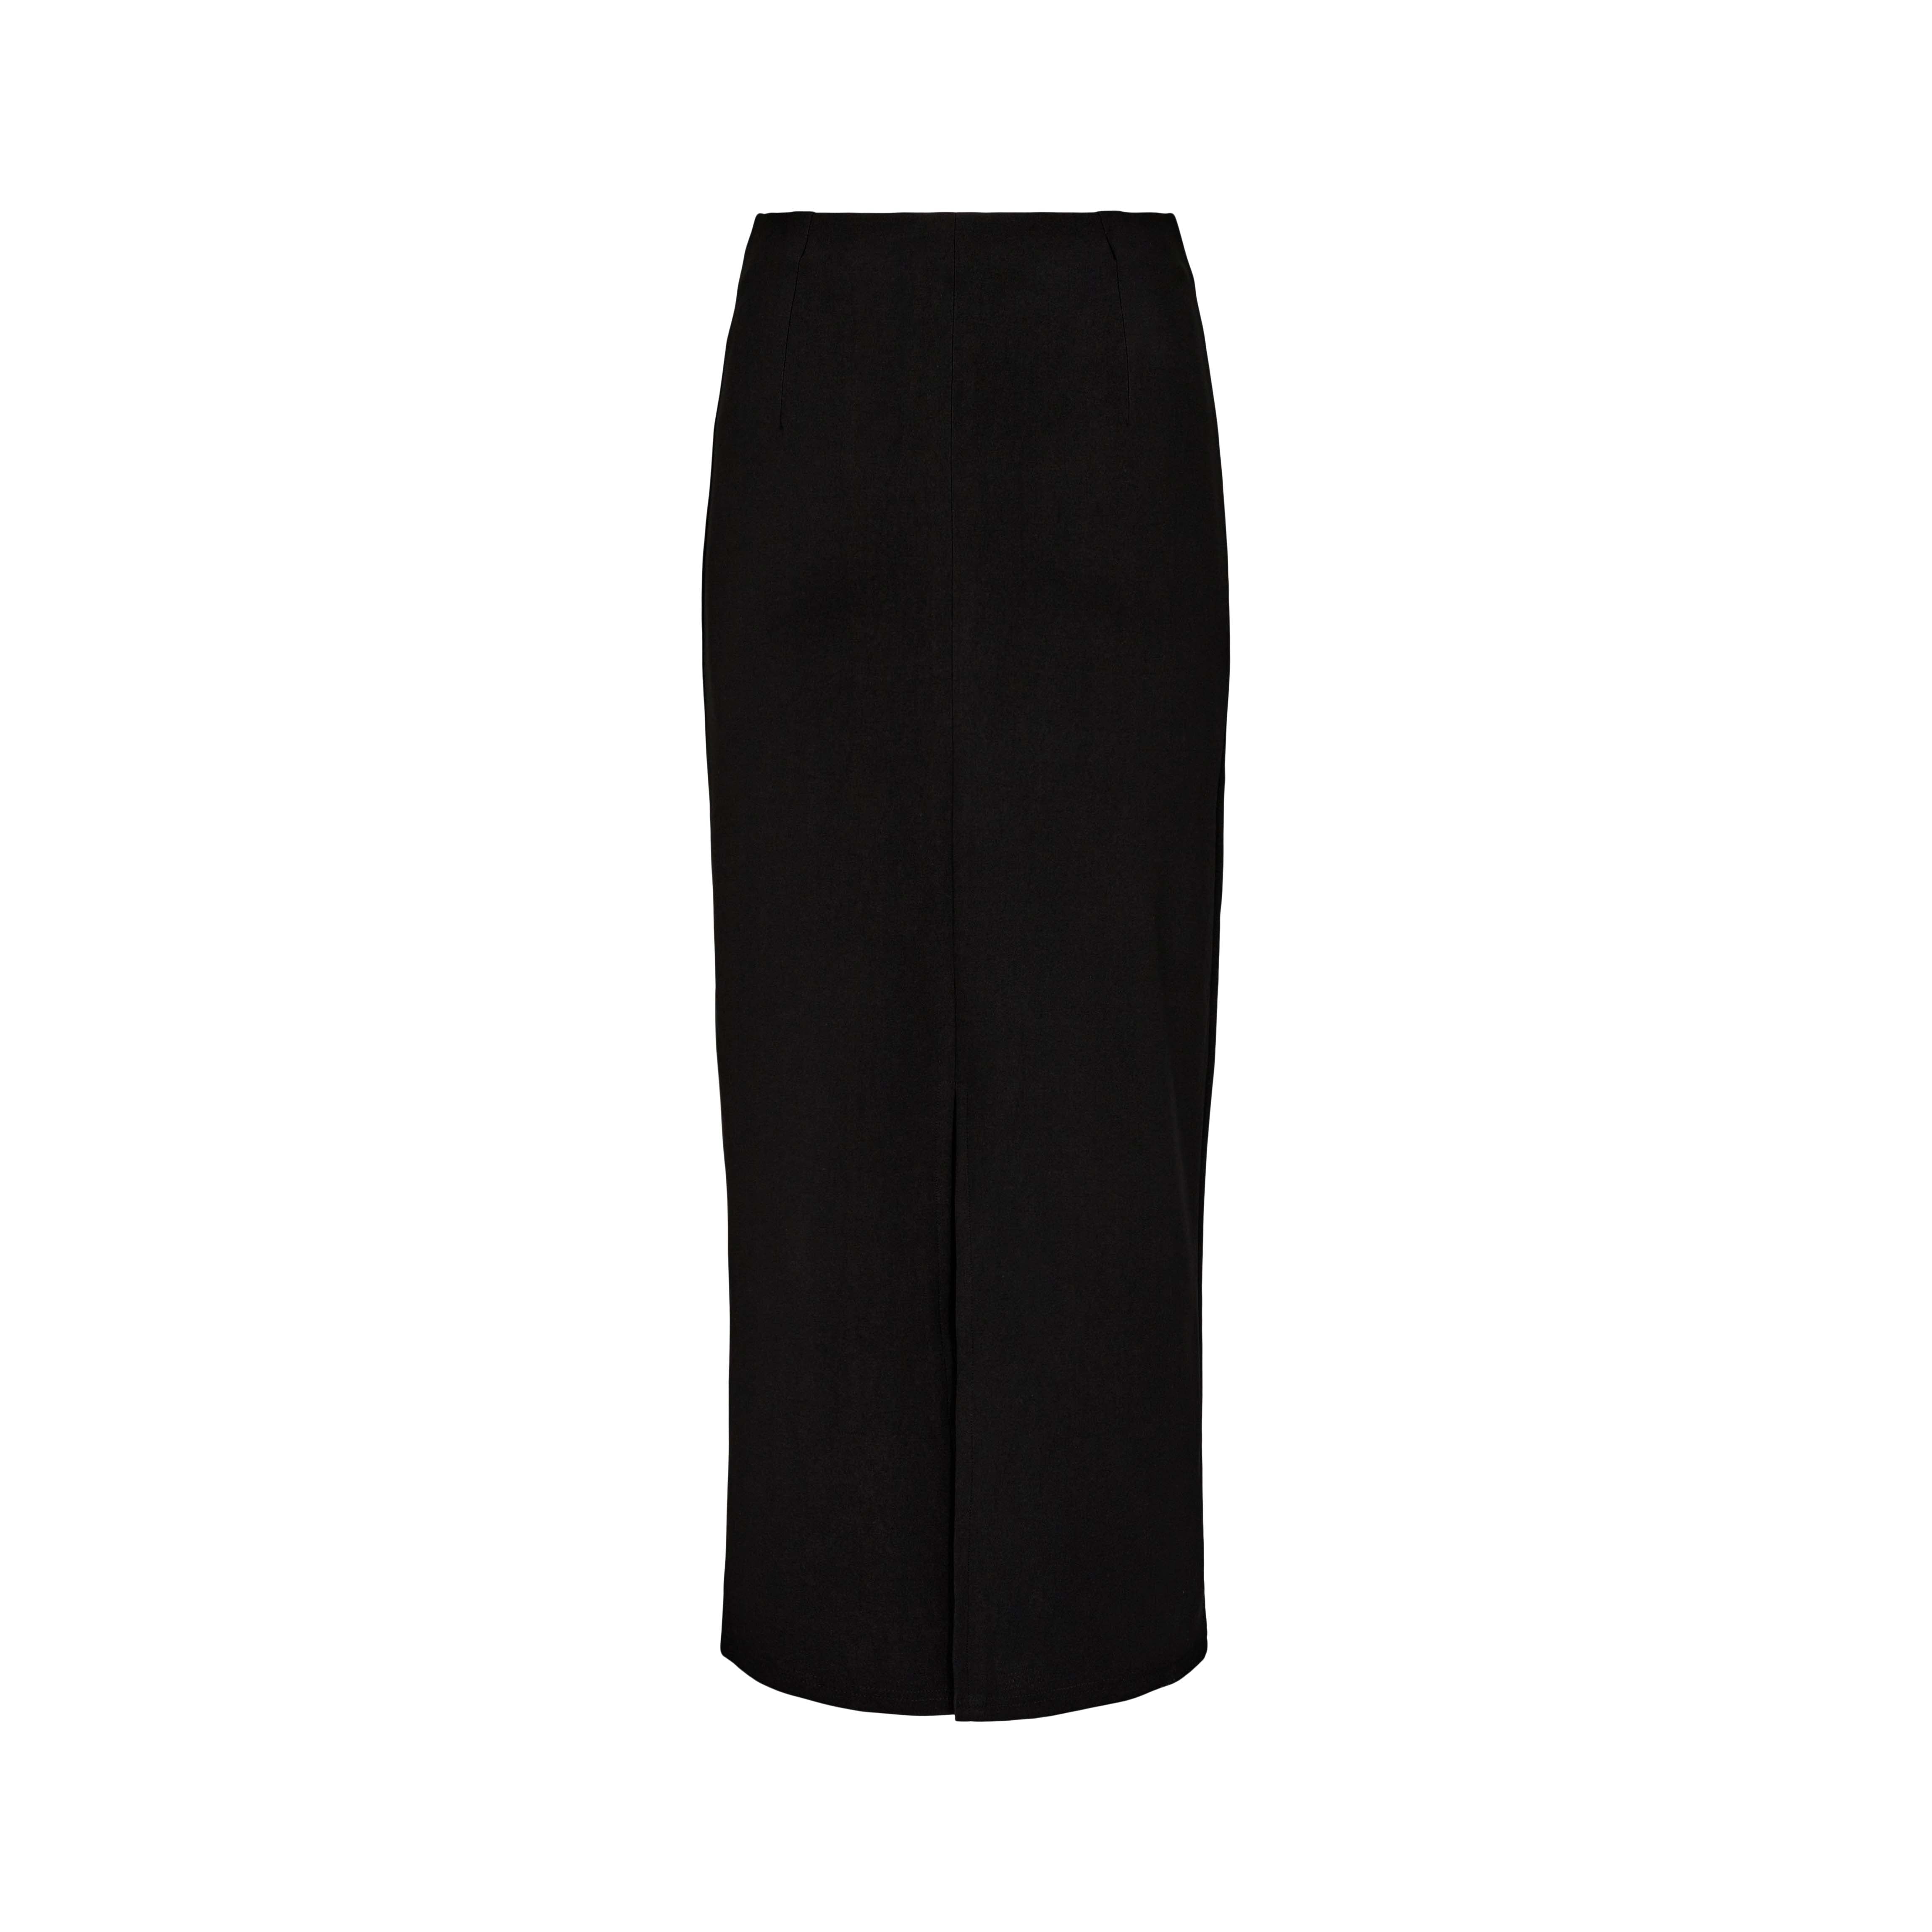 Liberté Mesh long skirt black - Online-Mode